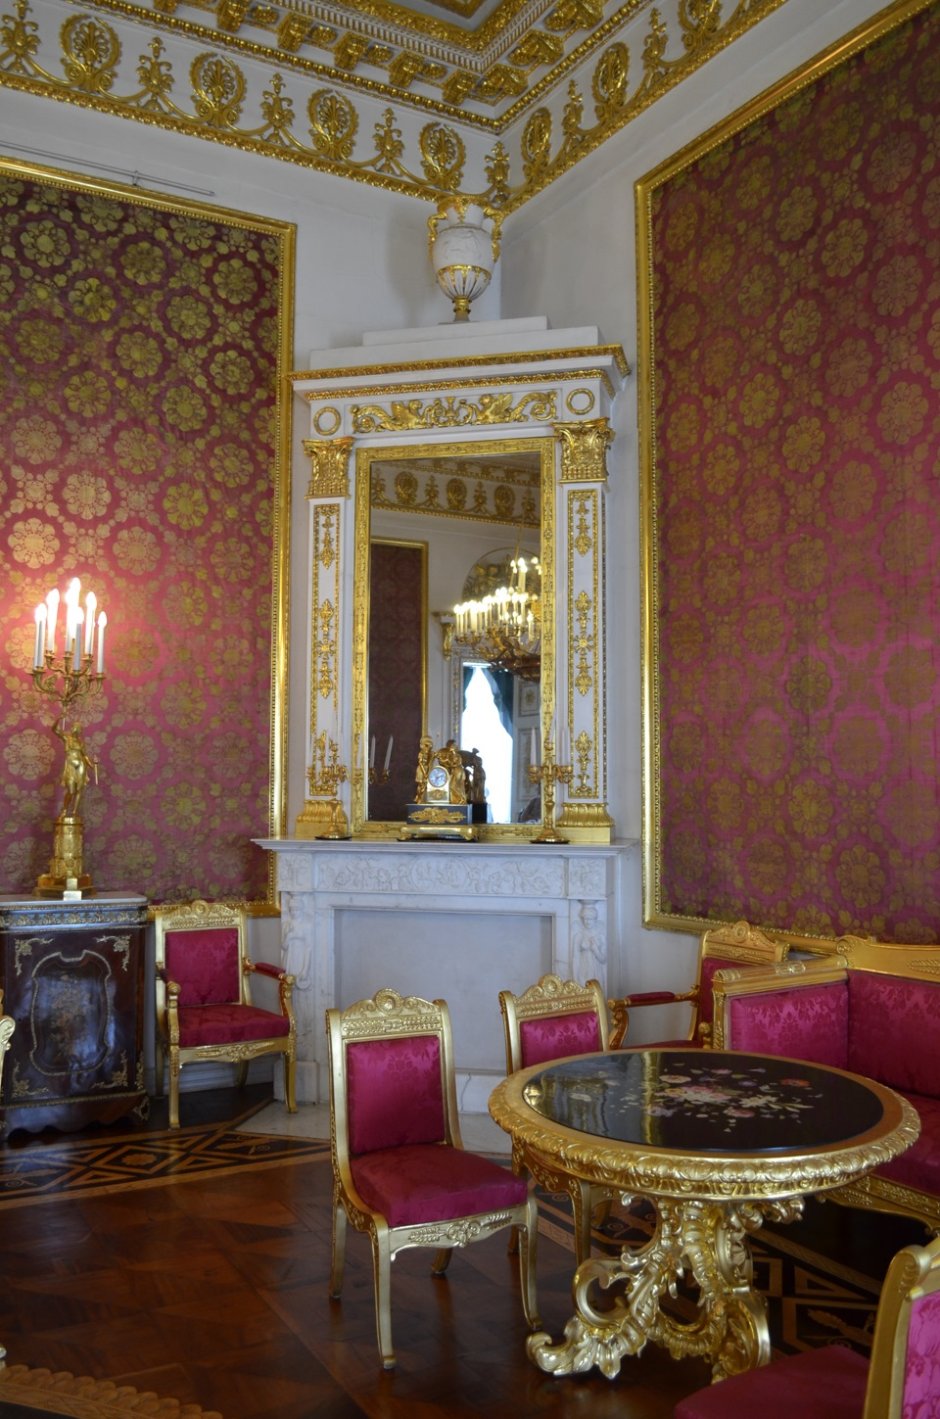 Юсуповский дворец в Санкт-Петербурге интерьеры